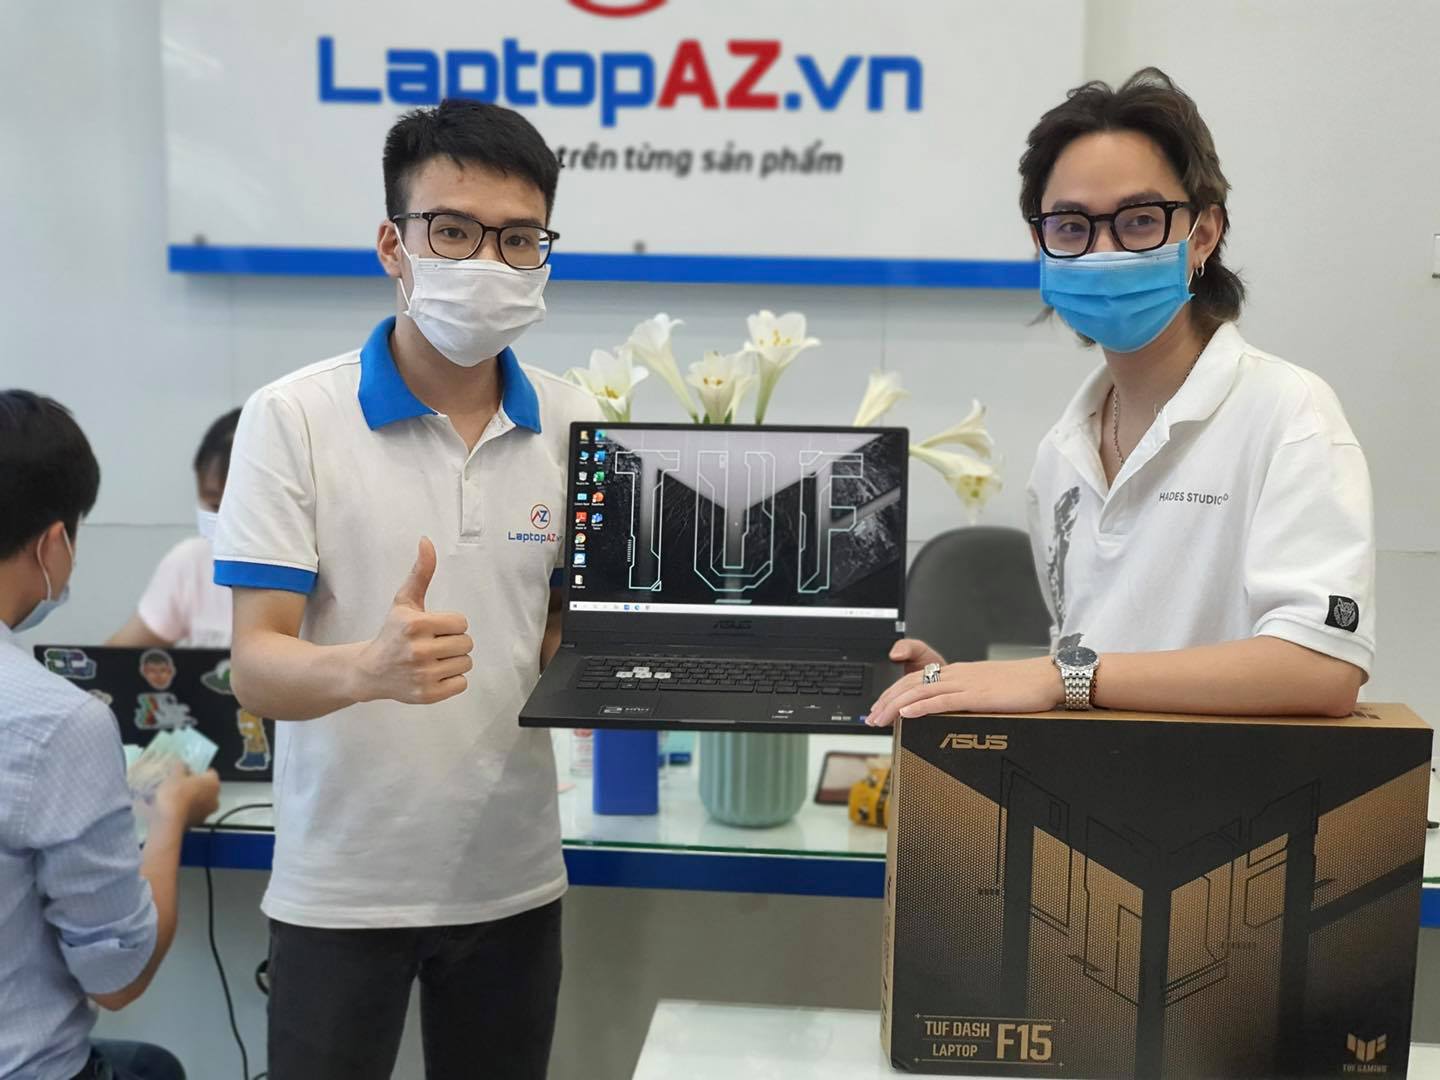 Laptopaz.vn - Thương Hiệu Mua Bán Laptop Uy Tín Hàng Đầu Việt Nam ảnh 2